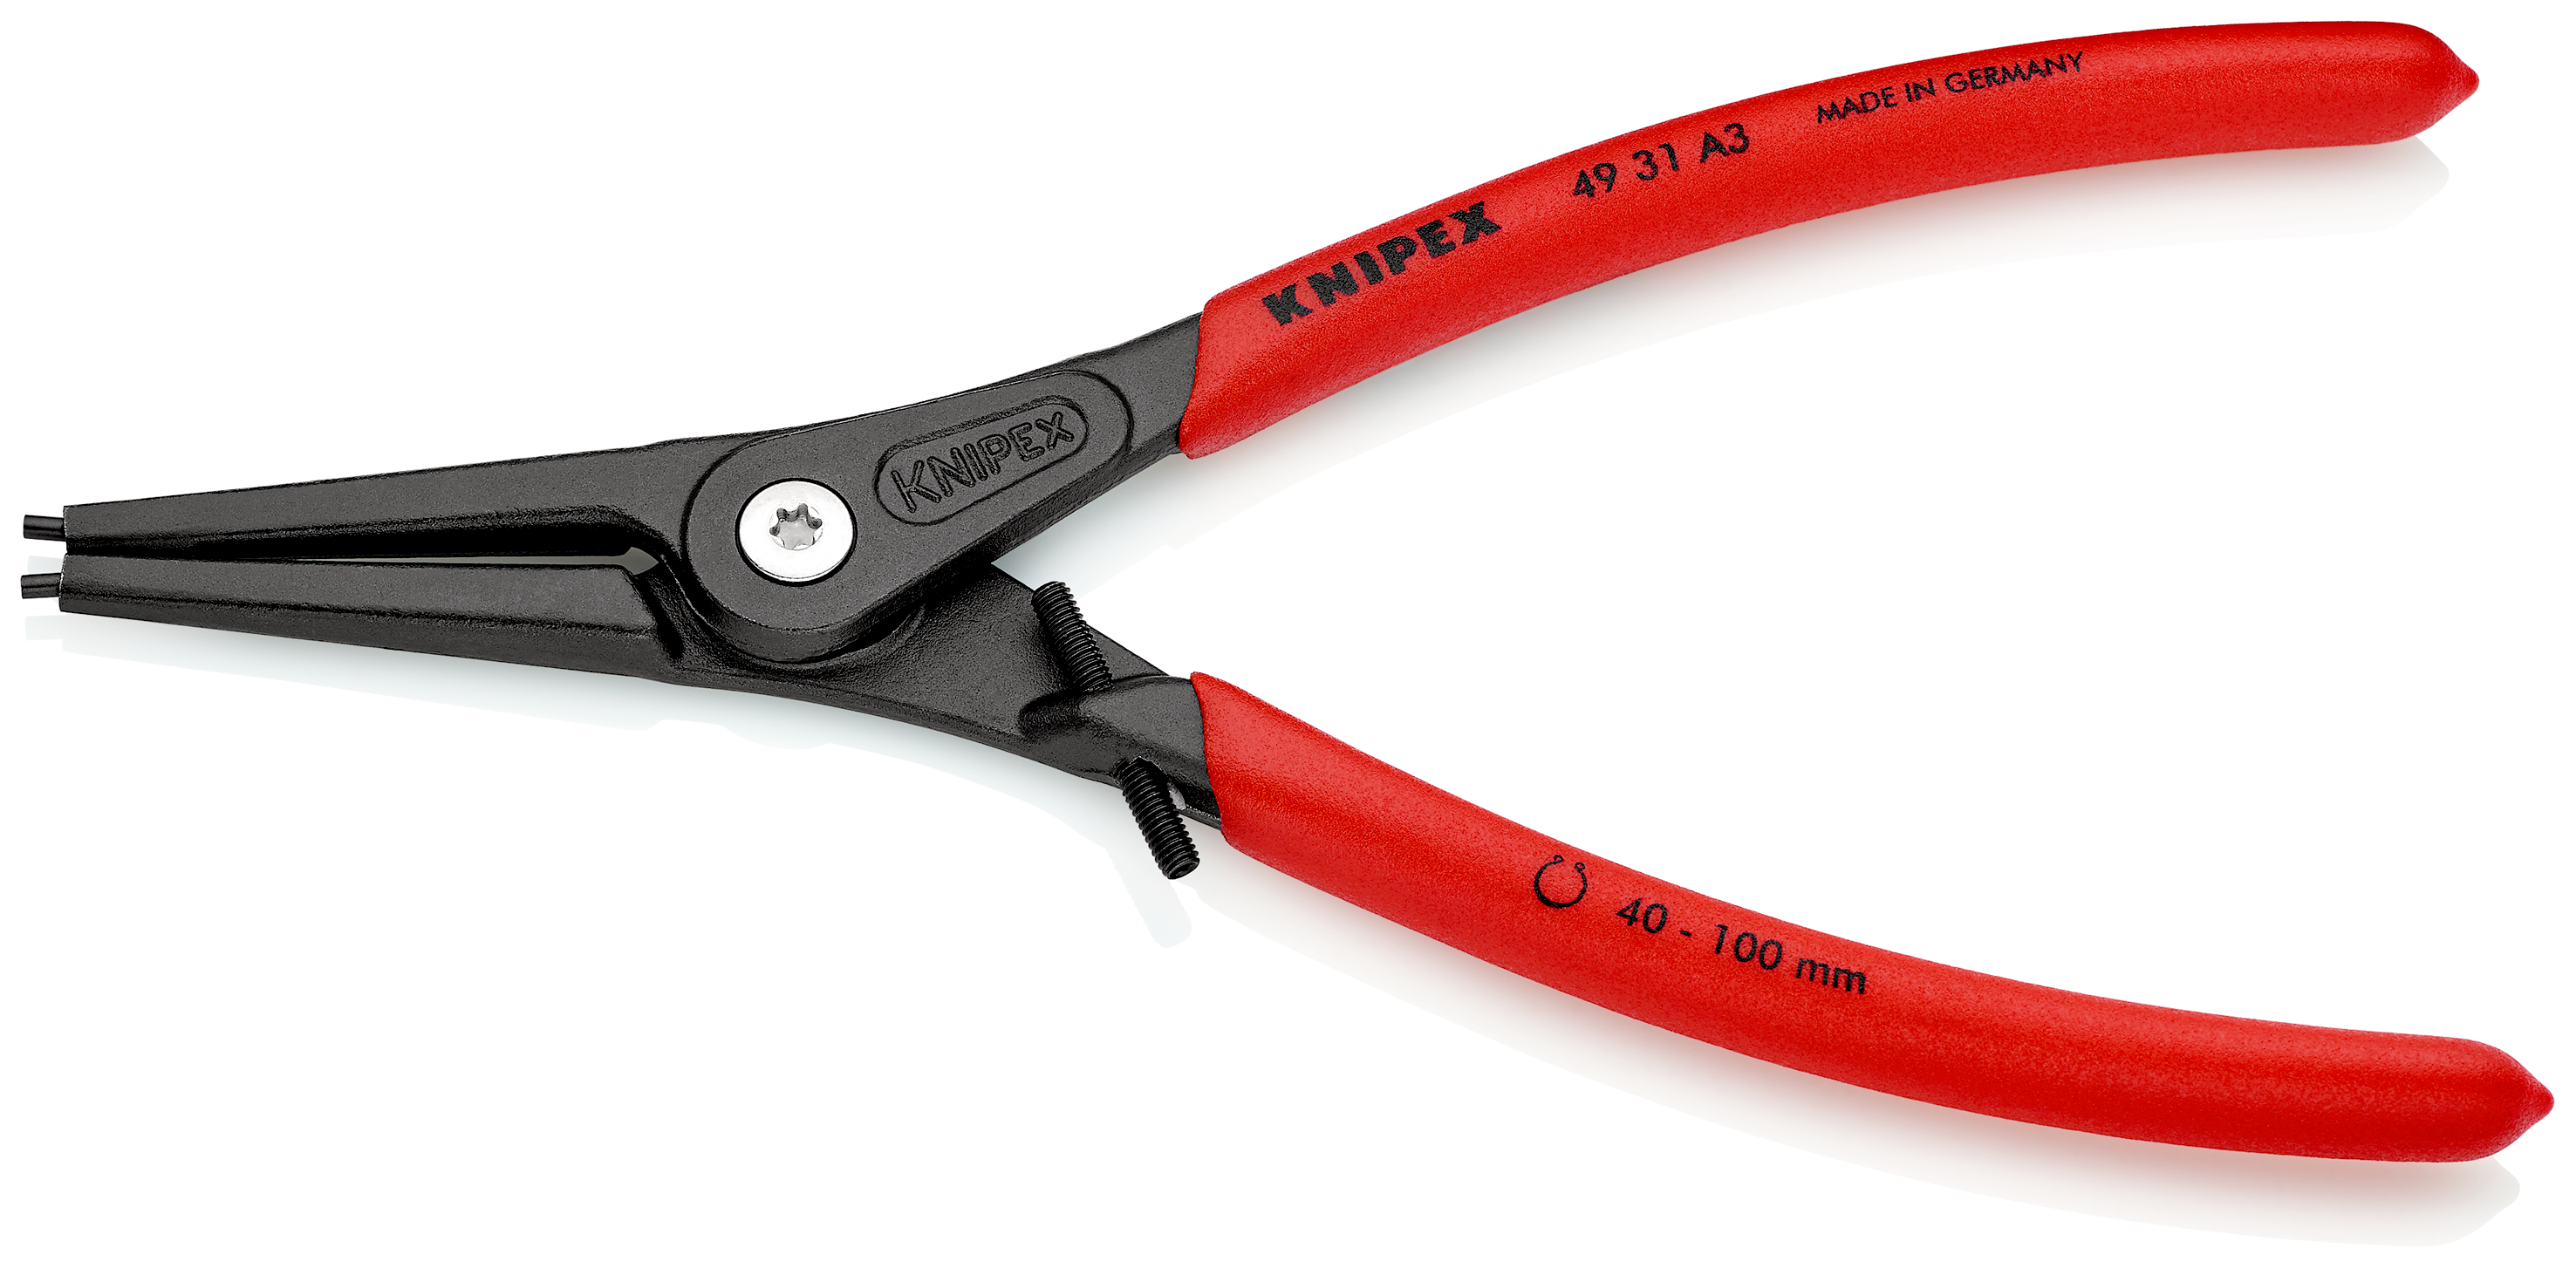 Knipex 4931A3 Cleste pentru inele de siguranță de exterior Ø 40 – 100 mm cu protecţie la supraîntindere, lungime 225 mm